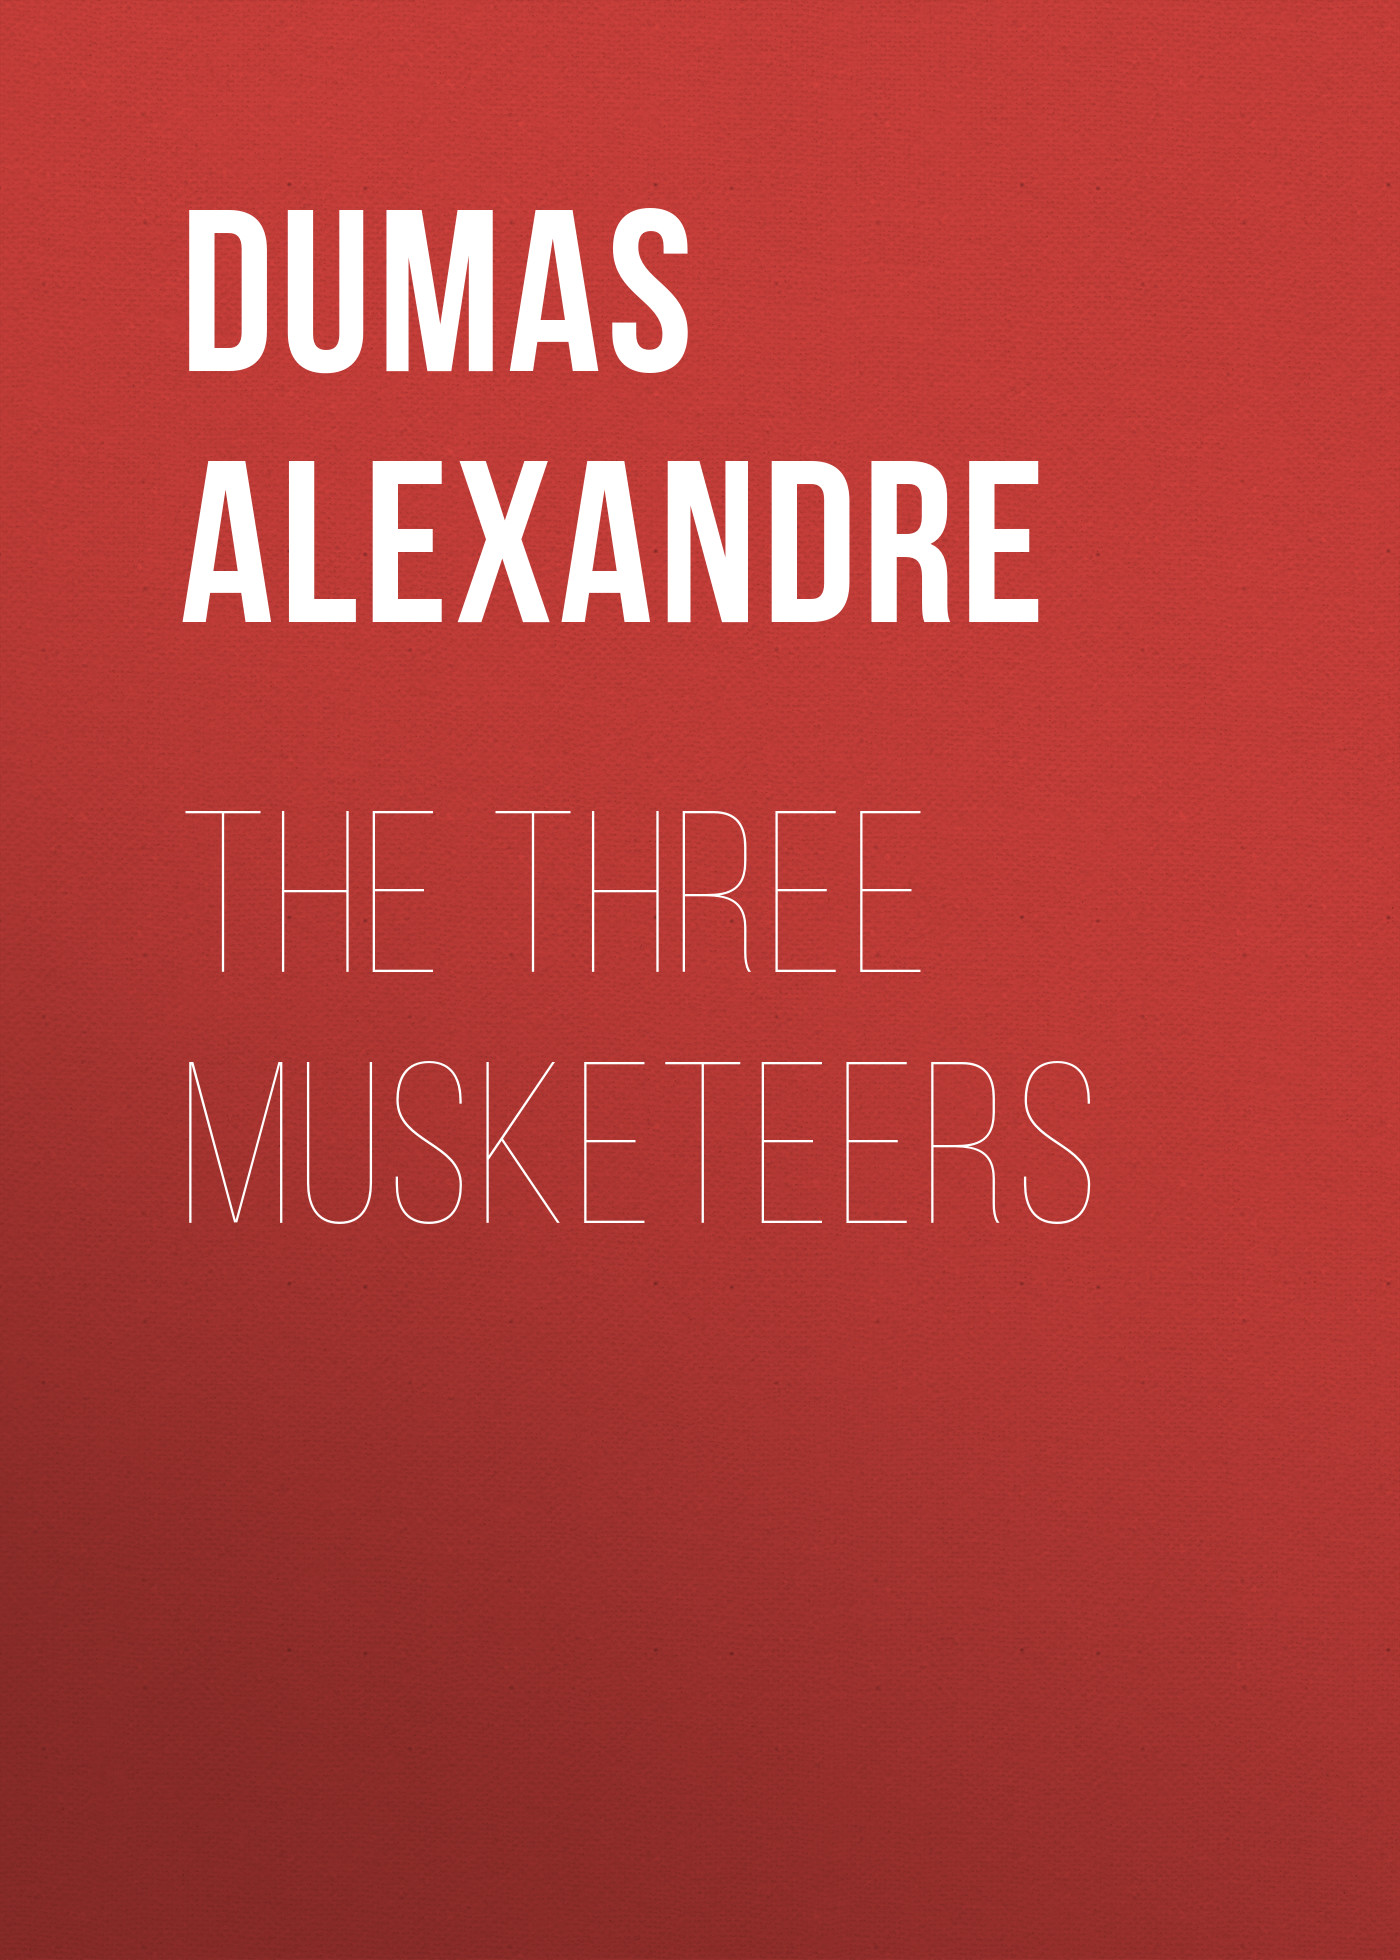 Книга The Three Musketeers из серии , созданная Alexandre Dumas, может относится к жанру Литература 19 века, Зарубежная старинная литература, Зарубежная классика. Стоимость электронной книги The Three Musketeers с идентификатором 25202655 составляет 0 руб.